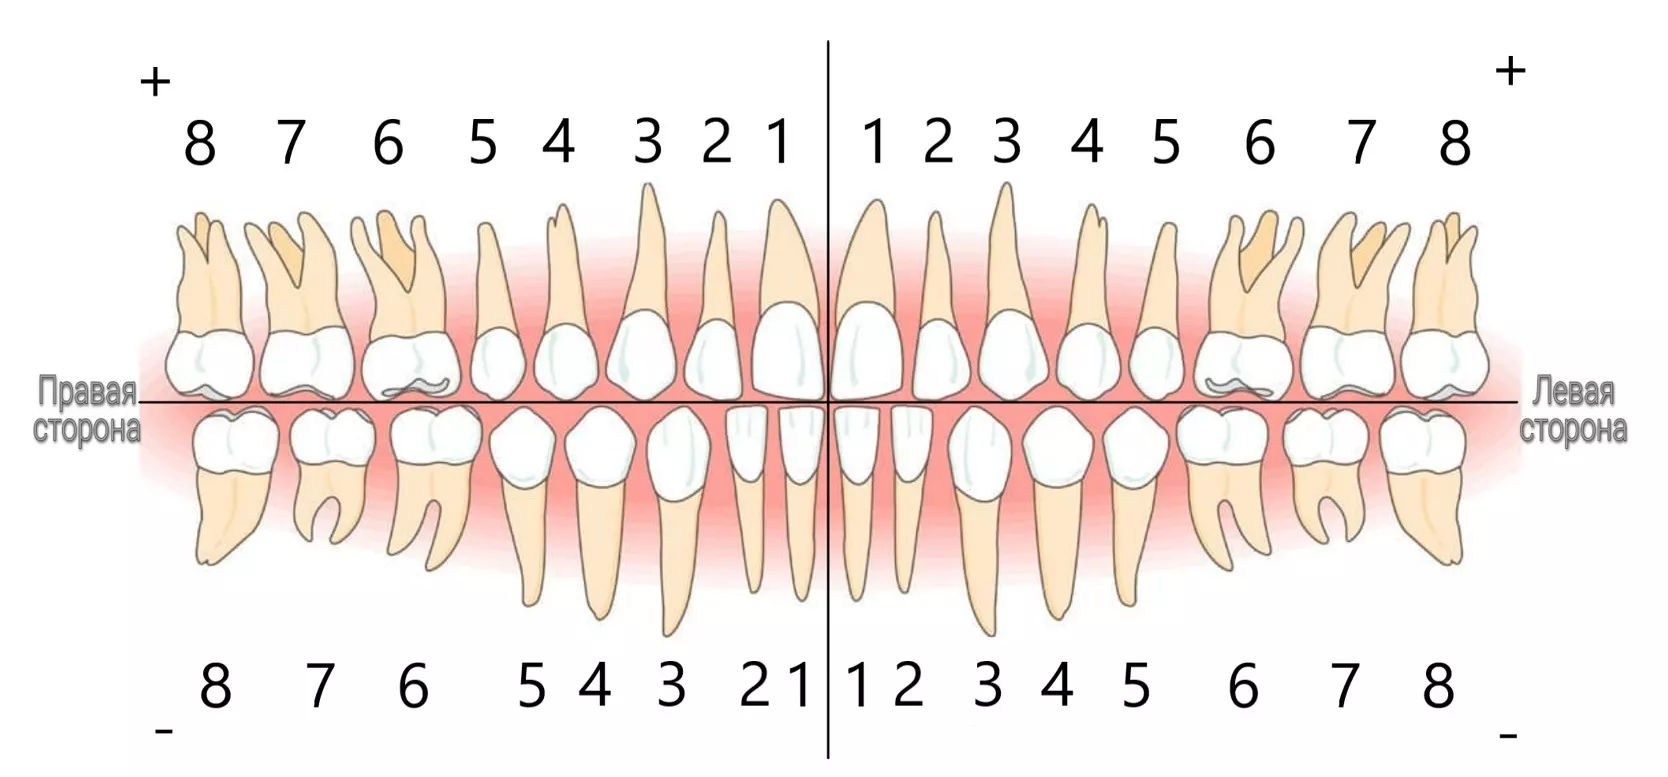 Зубы восьмерки это какие. Зубы человека нумерация зубов. Расположение зубов по номерам. Нумерация зубов в стоматологии схема. Номера зубов у человека в стоматологии.